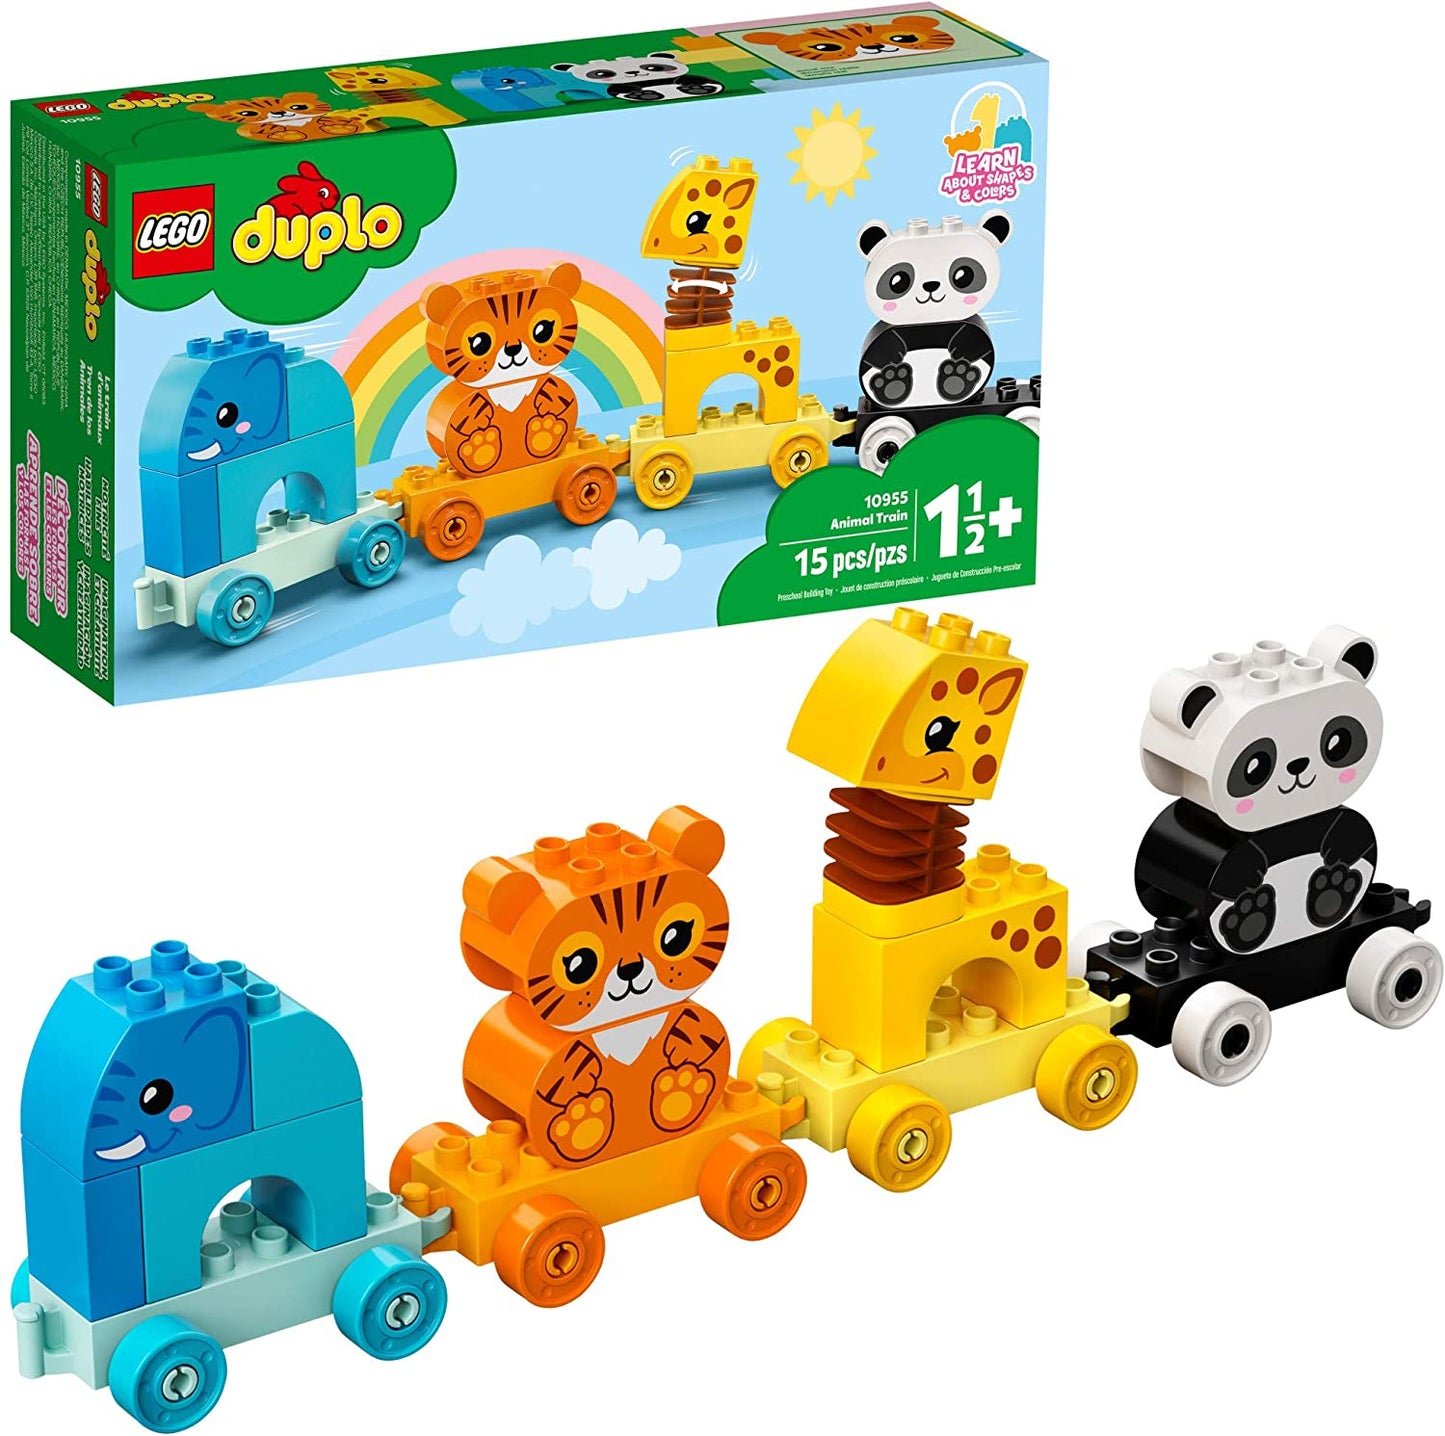 LEGO DUPLO - My First Animal Train 10955